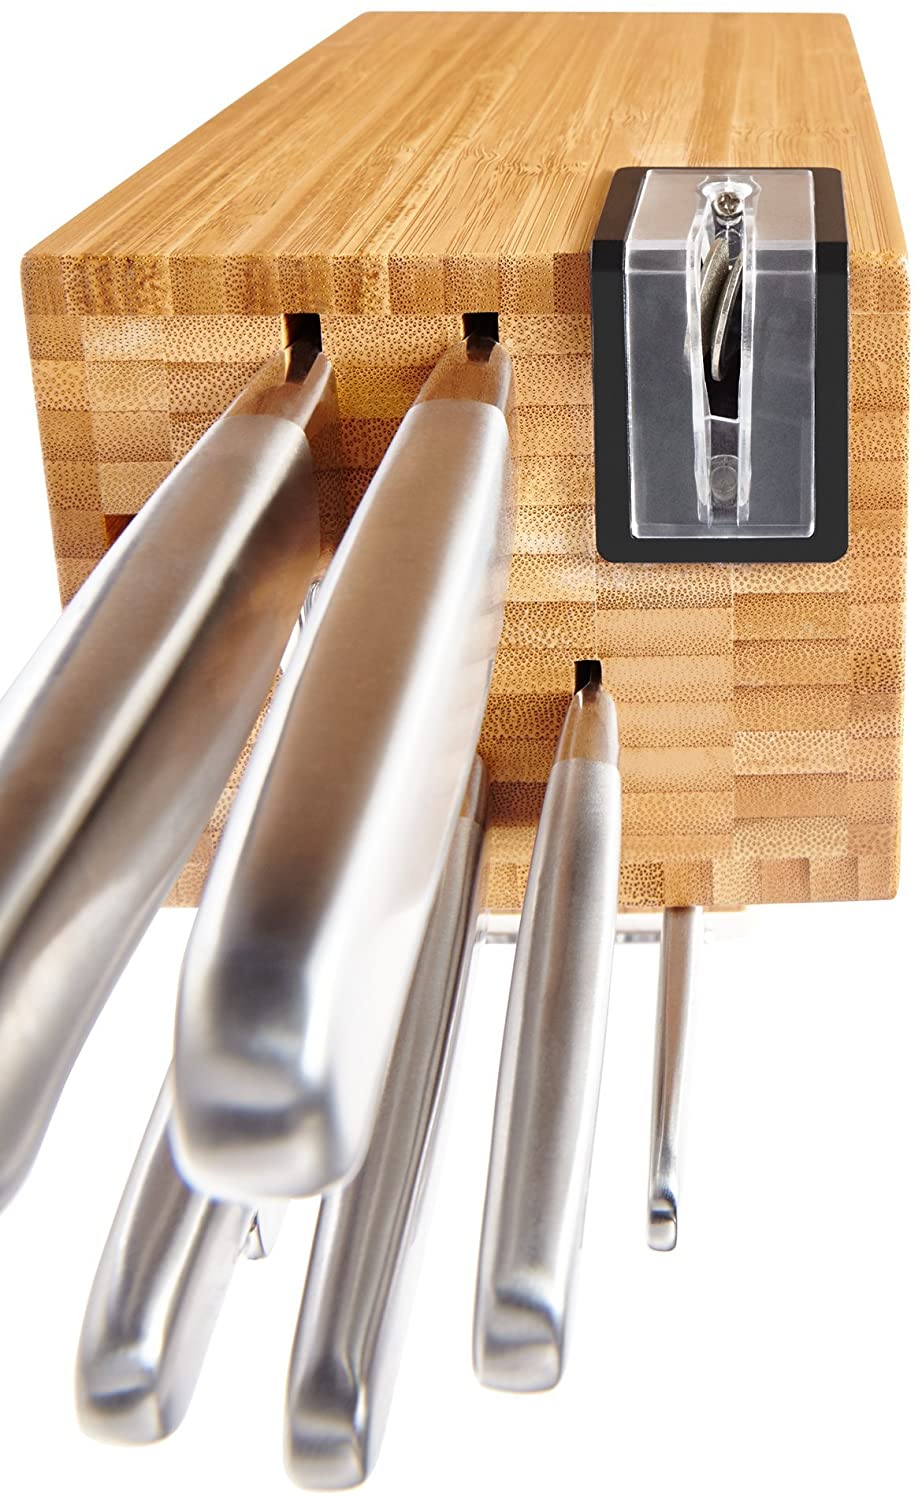 KitchenAid KKFSS14BO 14 조각 클래식 단조 시리즈 브러쉬 스테인레스 스틸 칼 세트, 대나무 우드